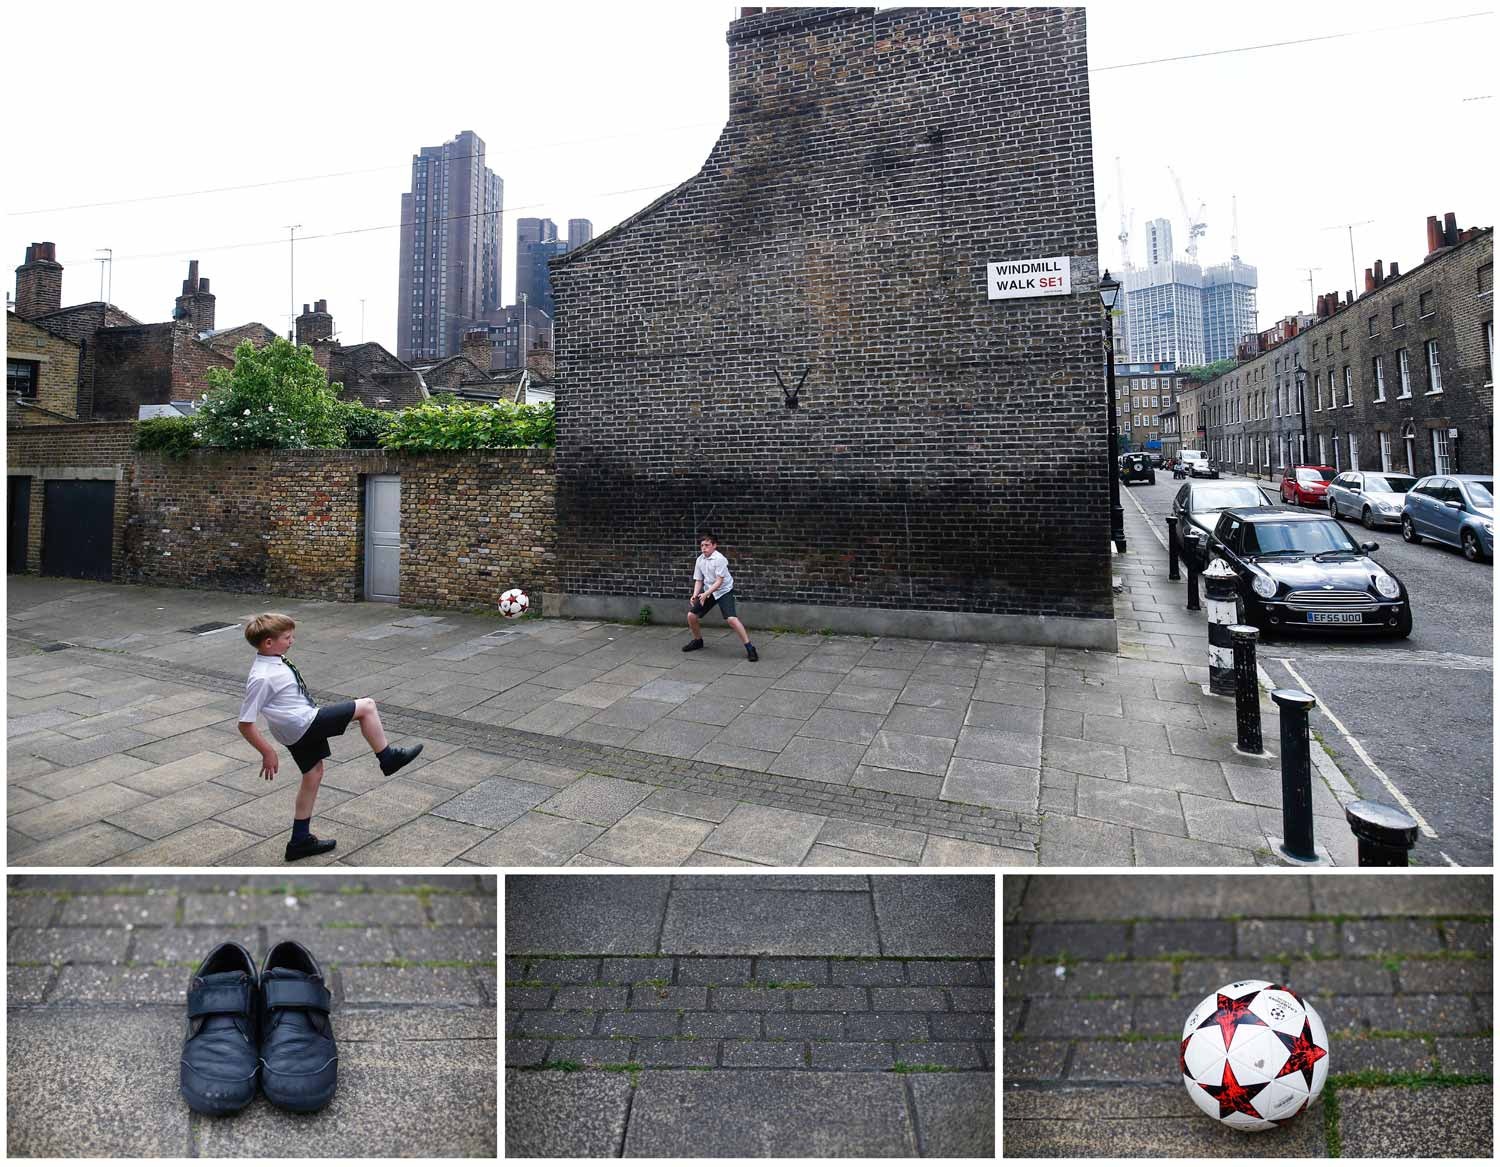  Uma bola e uma baliza desenhada nas paredes de um pr&eacute;dio bastam para duas crian&ccedil;as brincarem nas ruas de Londres, no Reino Unido. Foto: Henry Nicholls - Reuters 